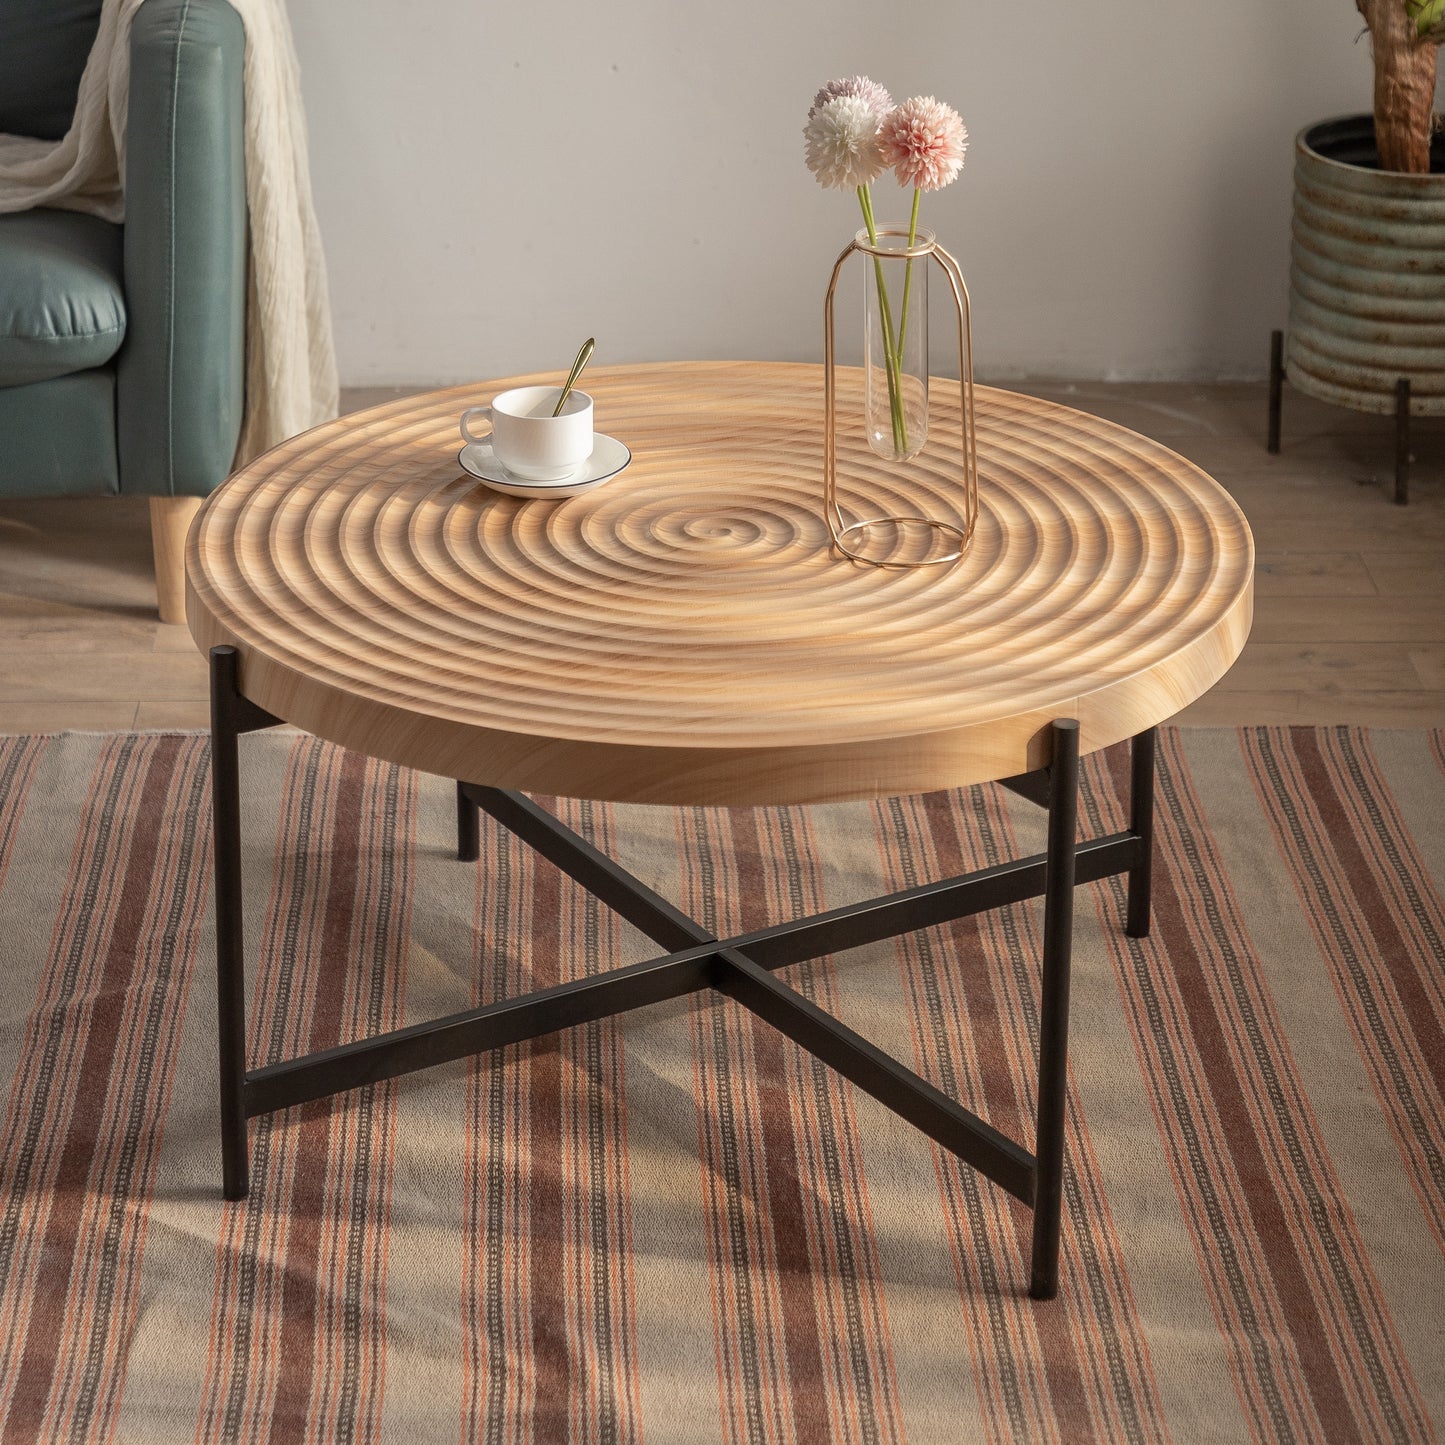 Textured Spiral Design Round Coffee Table , 33"